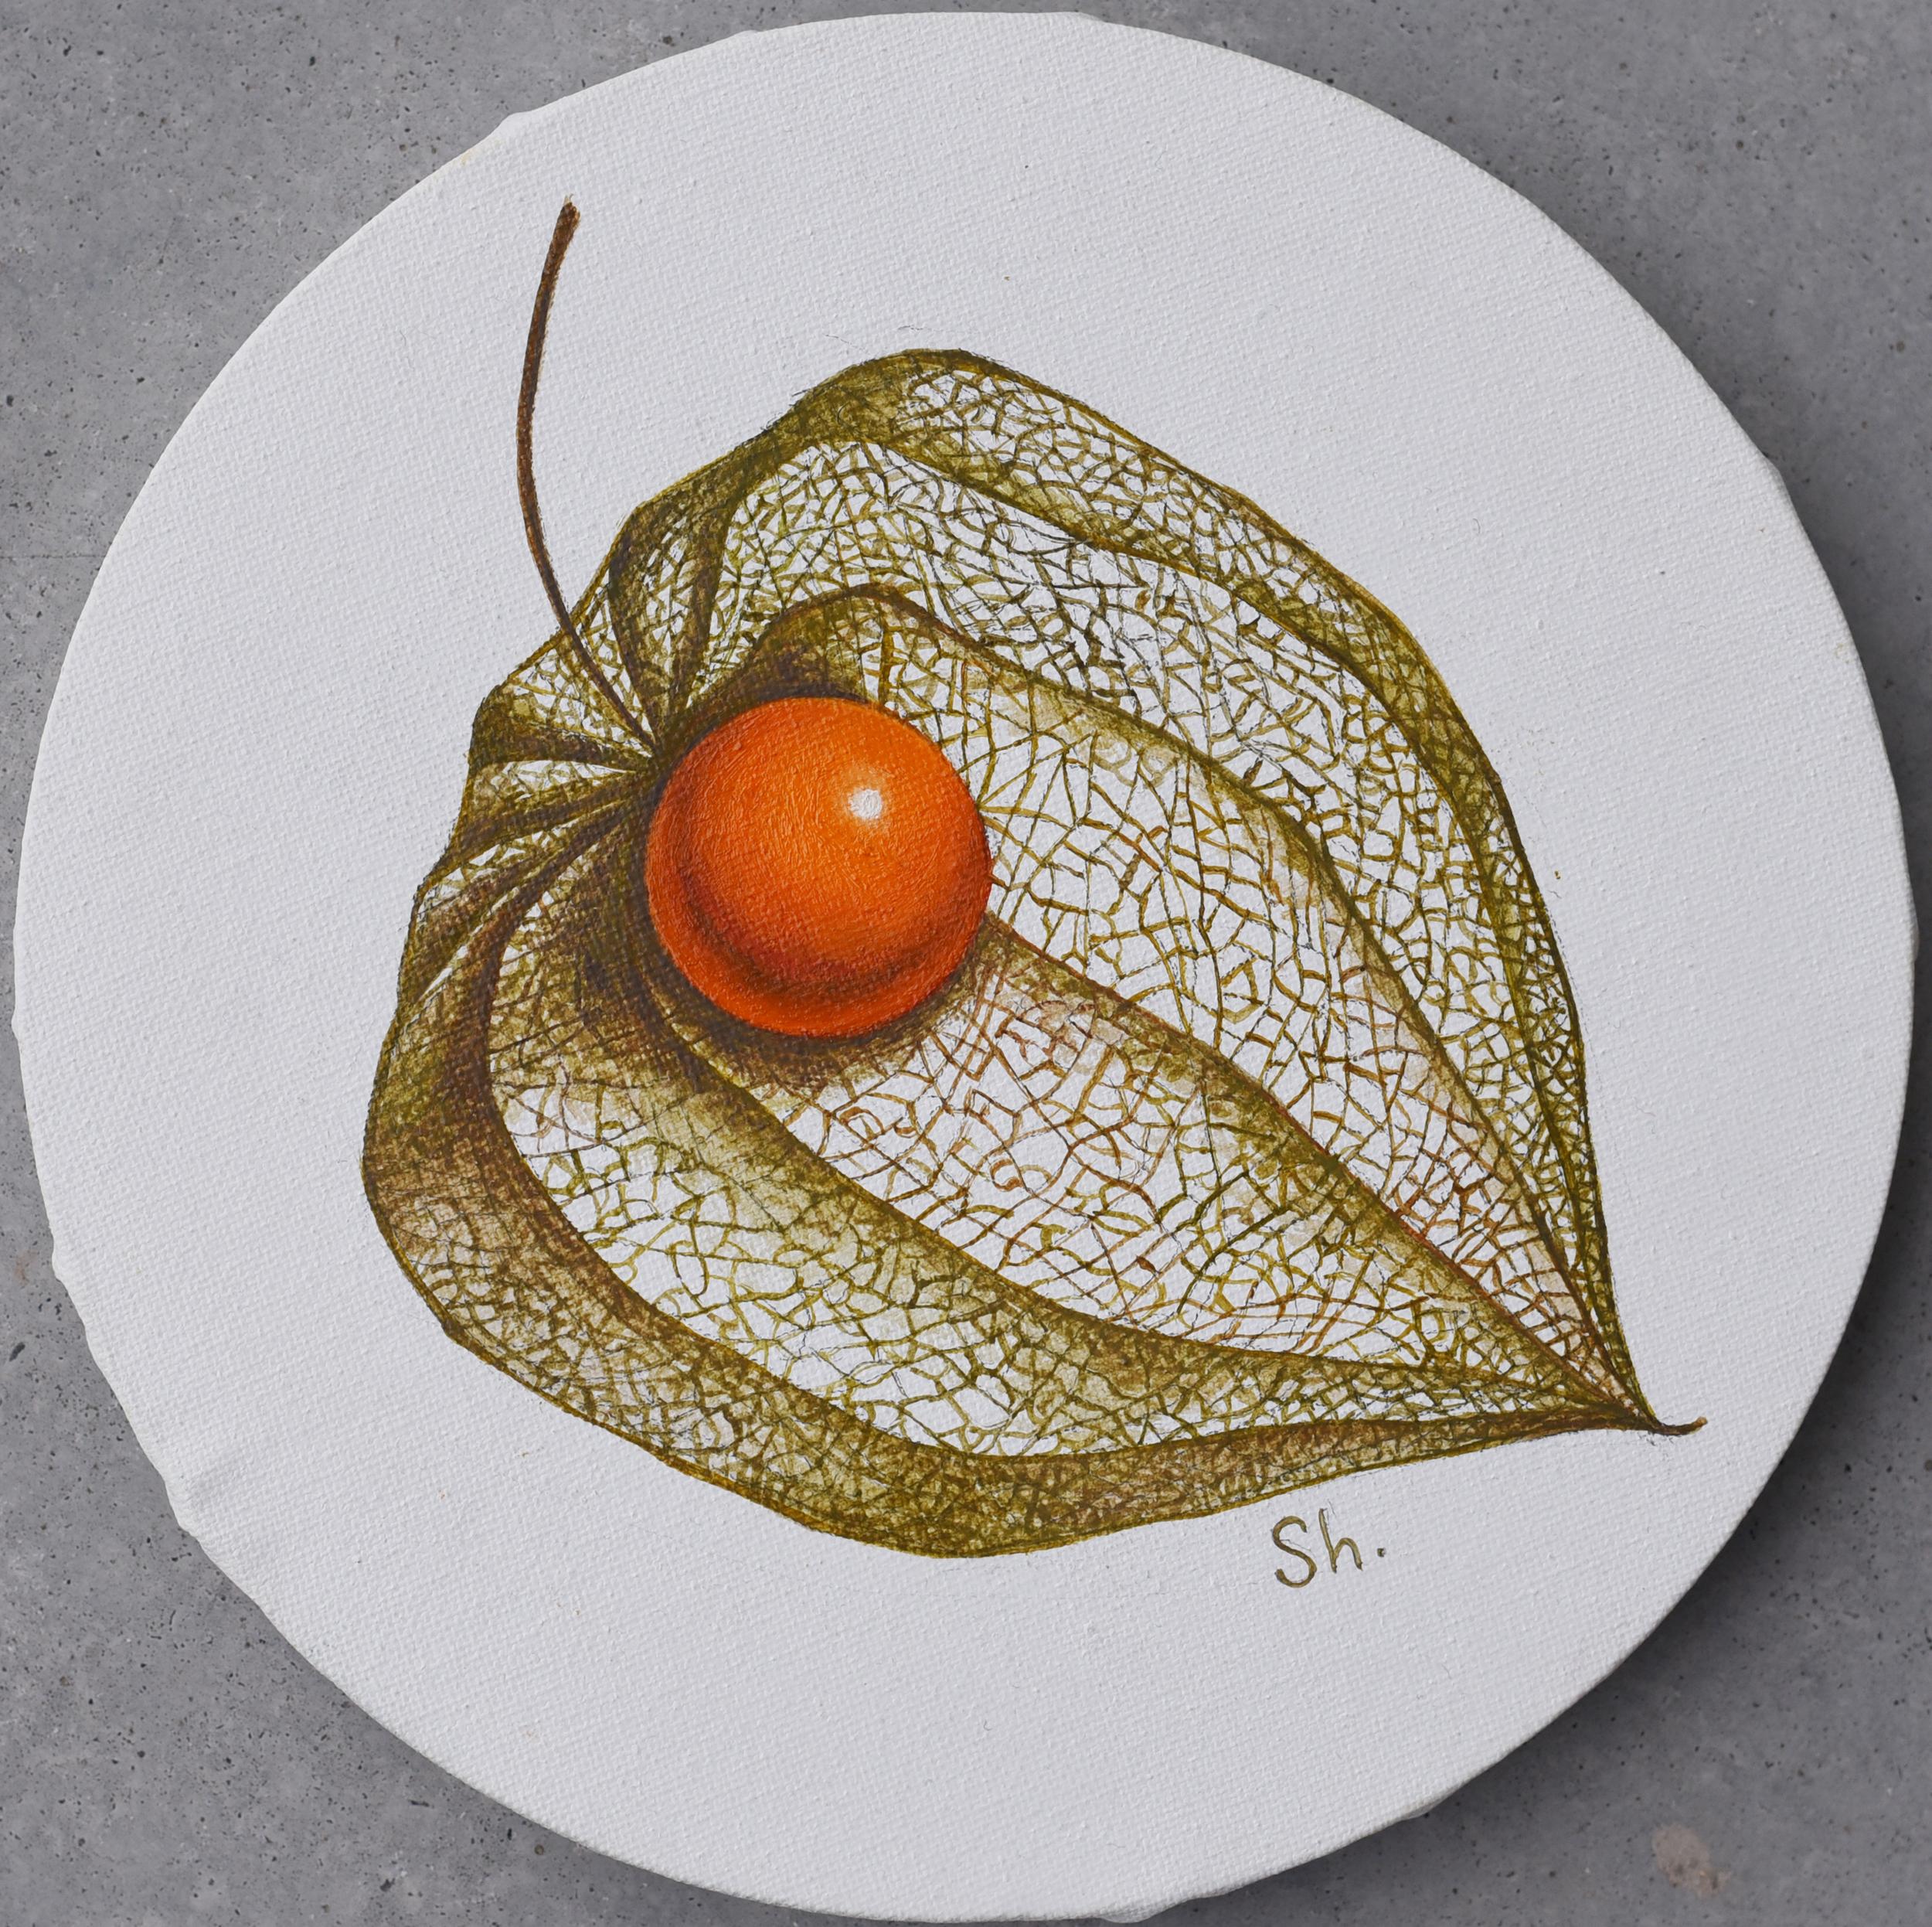 Physalis Früchte gemalt mit Ölfarben auf einer runden Leinwand